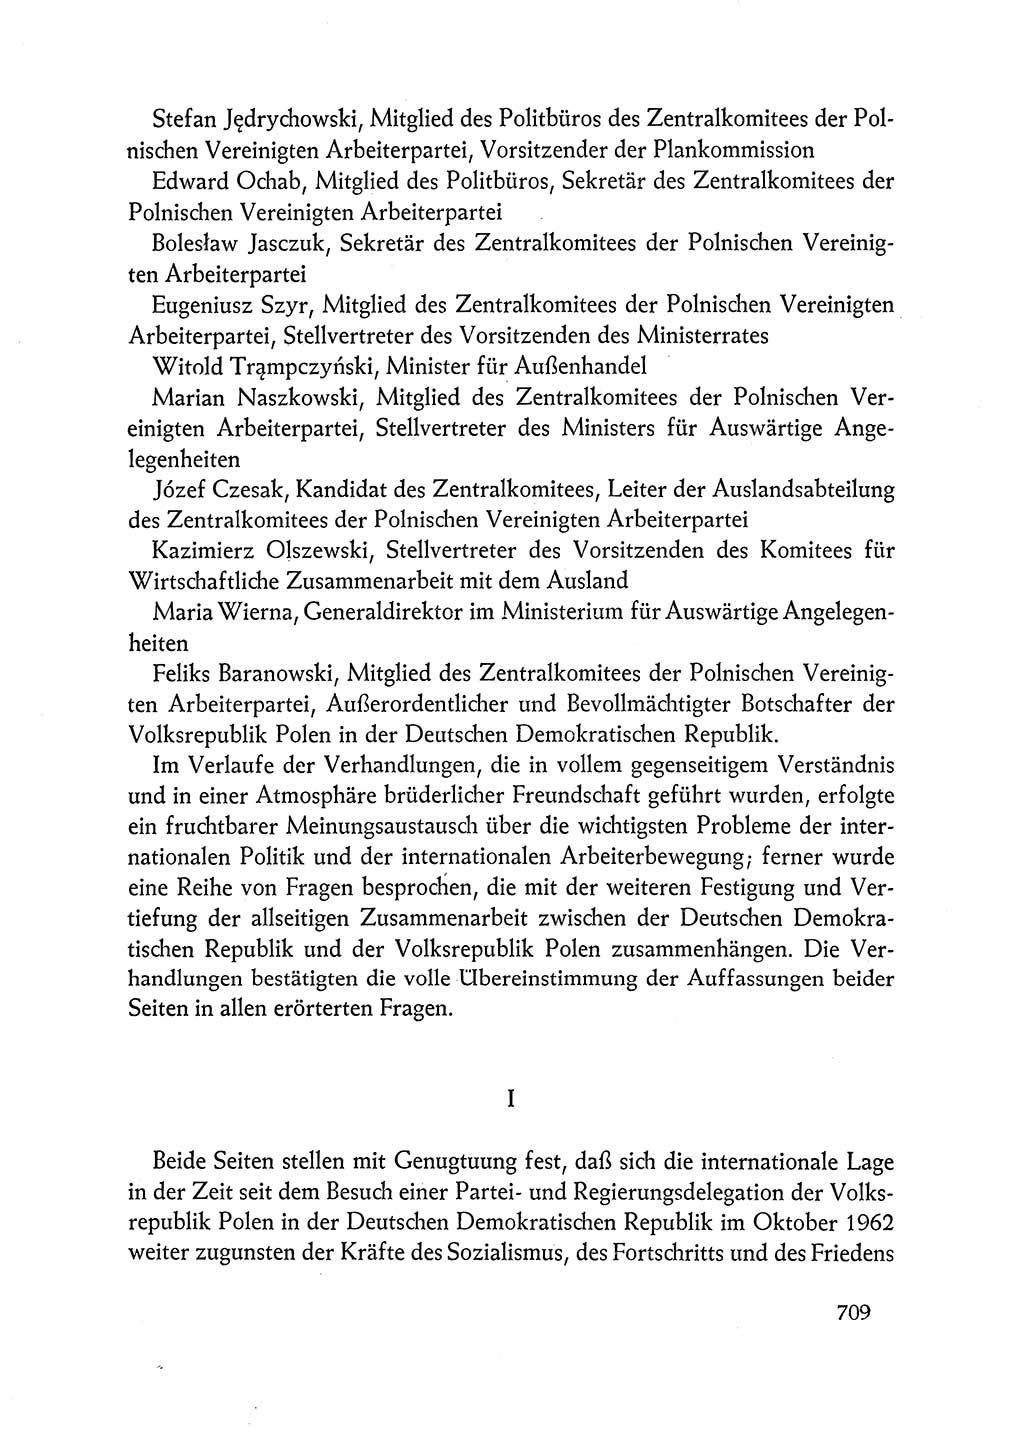 Dokumente der Sozialistischen Einheitspartei Deutschlands (SED) [Deutsche Demokratische Republik (DDR)] 1962-1963, Seite 709 (Dok. SED DDR 1962-1963, S. 709)